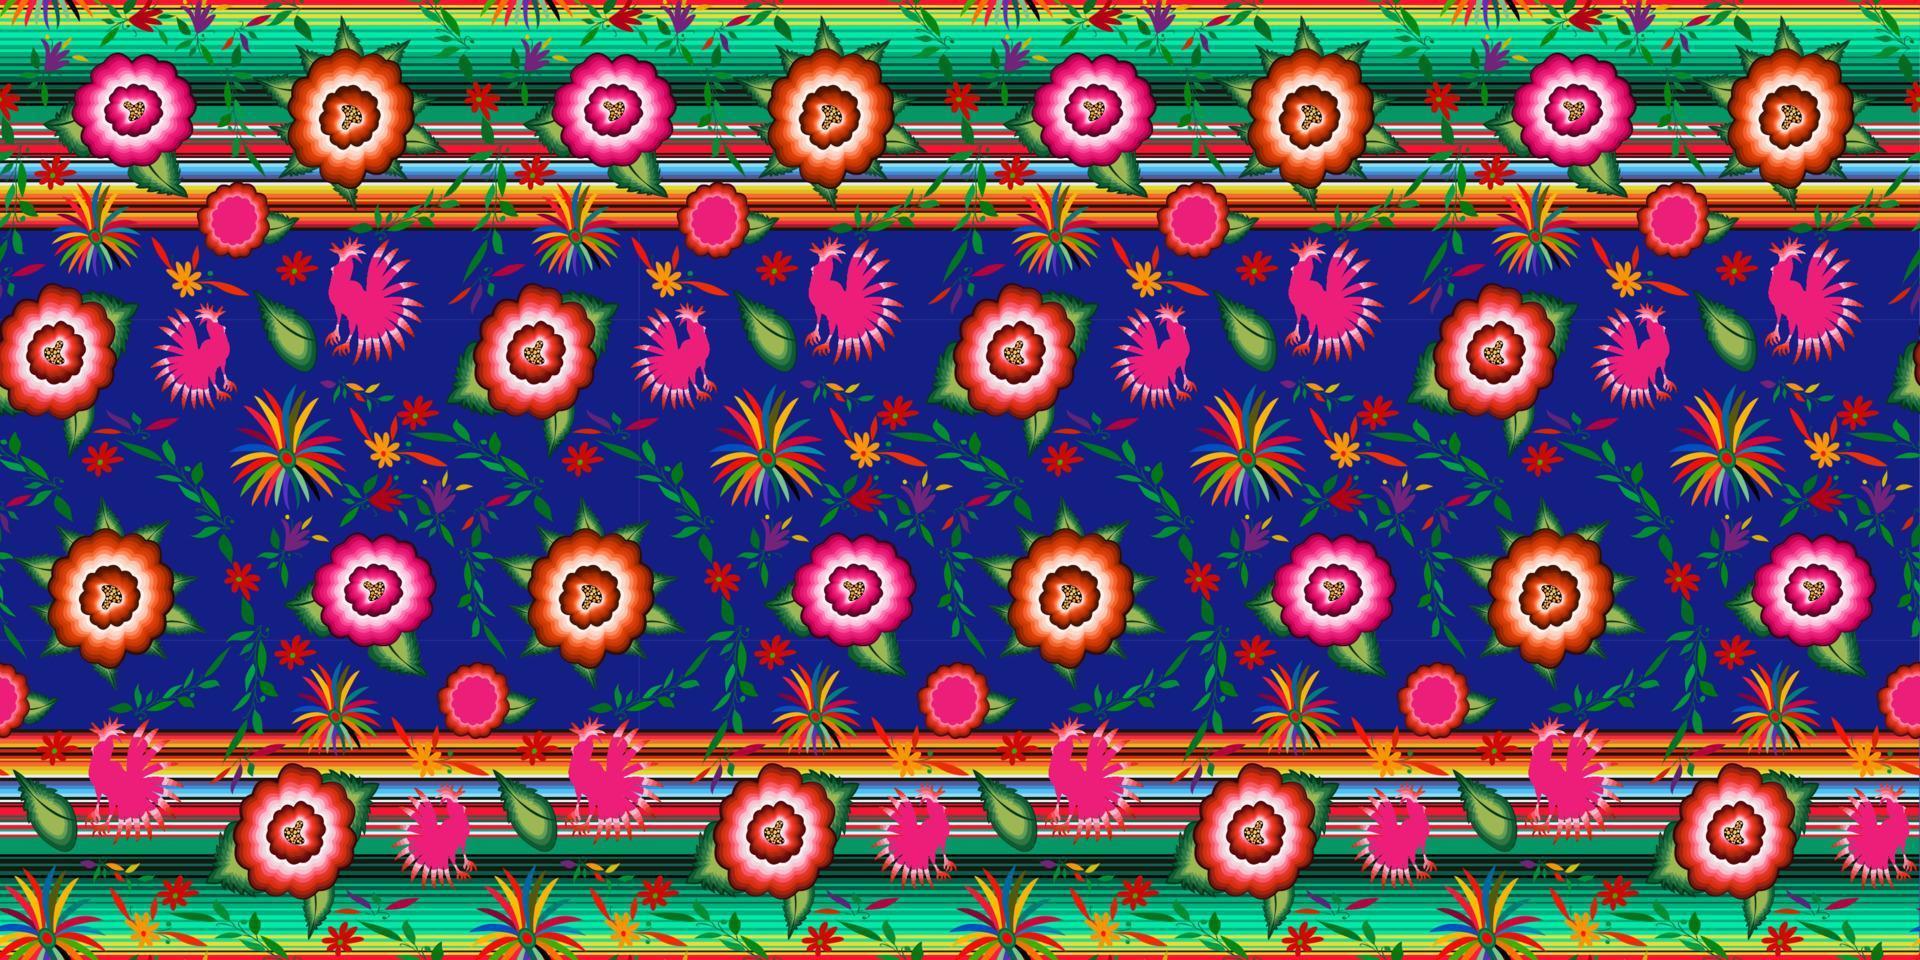 Patrón de bordado floral mexicano transparente, diseño de moda popular de coloridas flores nativas. Bordado de estilo textil tradicional de México, colores rayados, vector aislado sobre fondo azul.